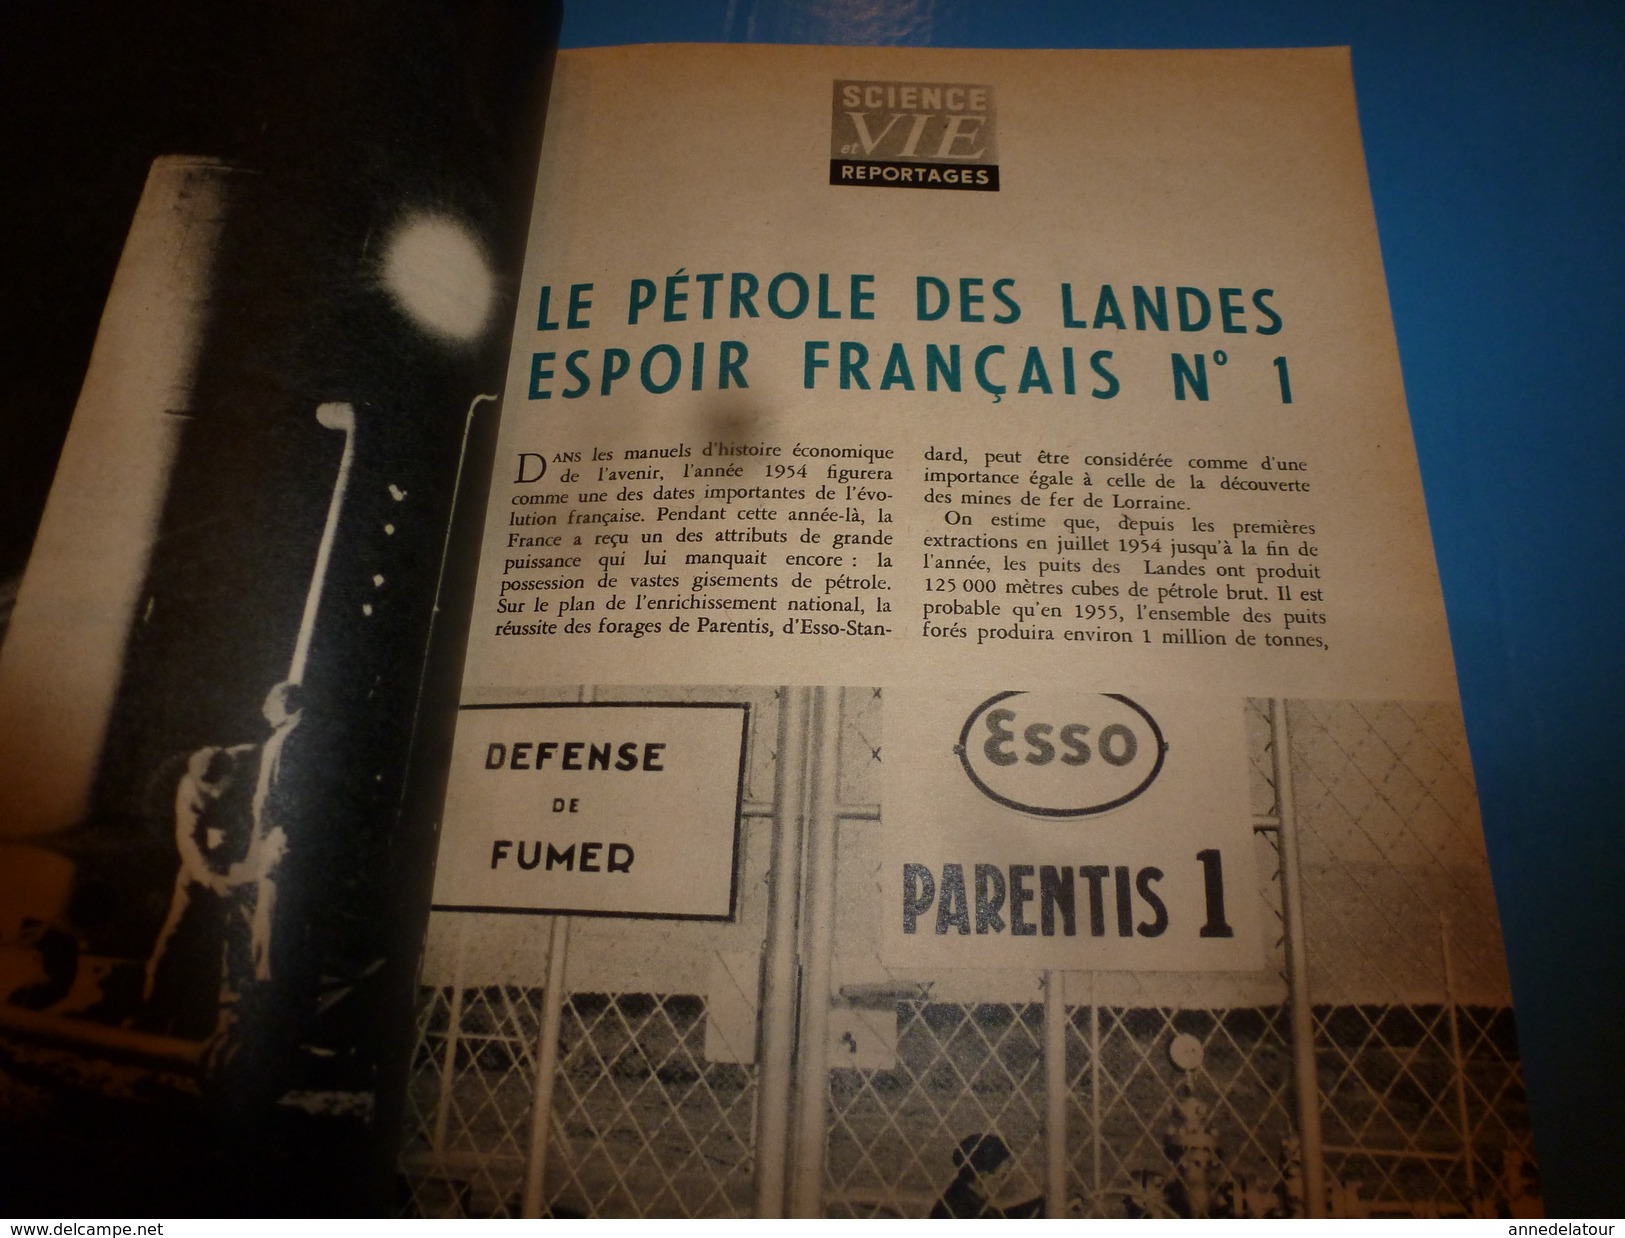 1955 SCIENCE Et VIE  --->PARENTIS La Grande Aventure Du Pétrole Français; Des Lunettes Pour Sourds; Au Pole-Sud;etc - Wissenschaft